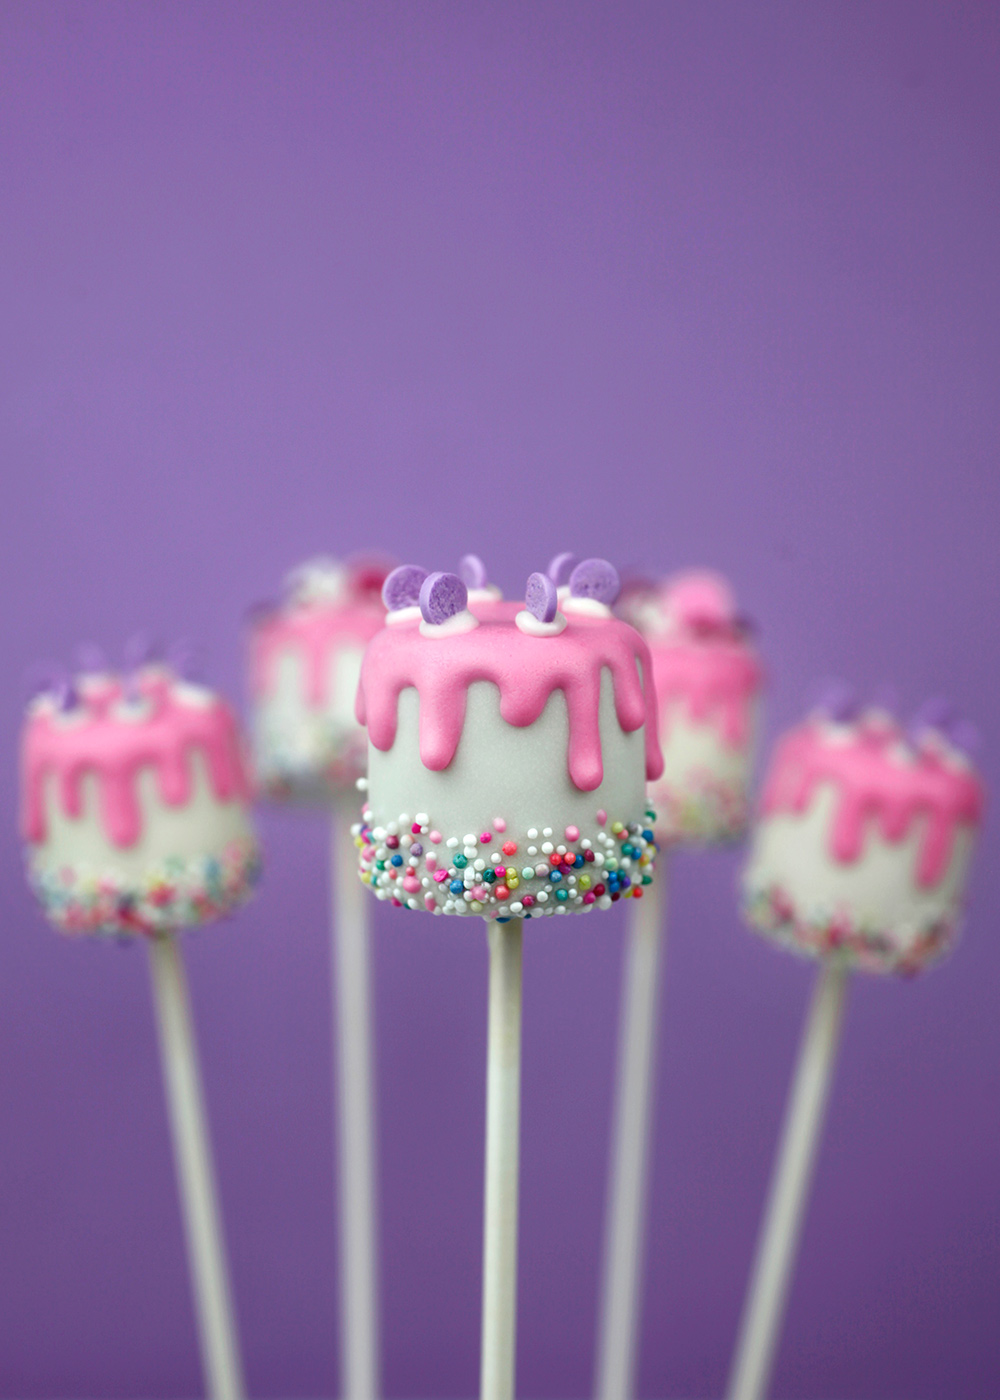 10 ý tưởng decorate cake pops với kẹo nhân viên sáng tạo